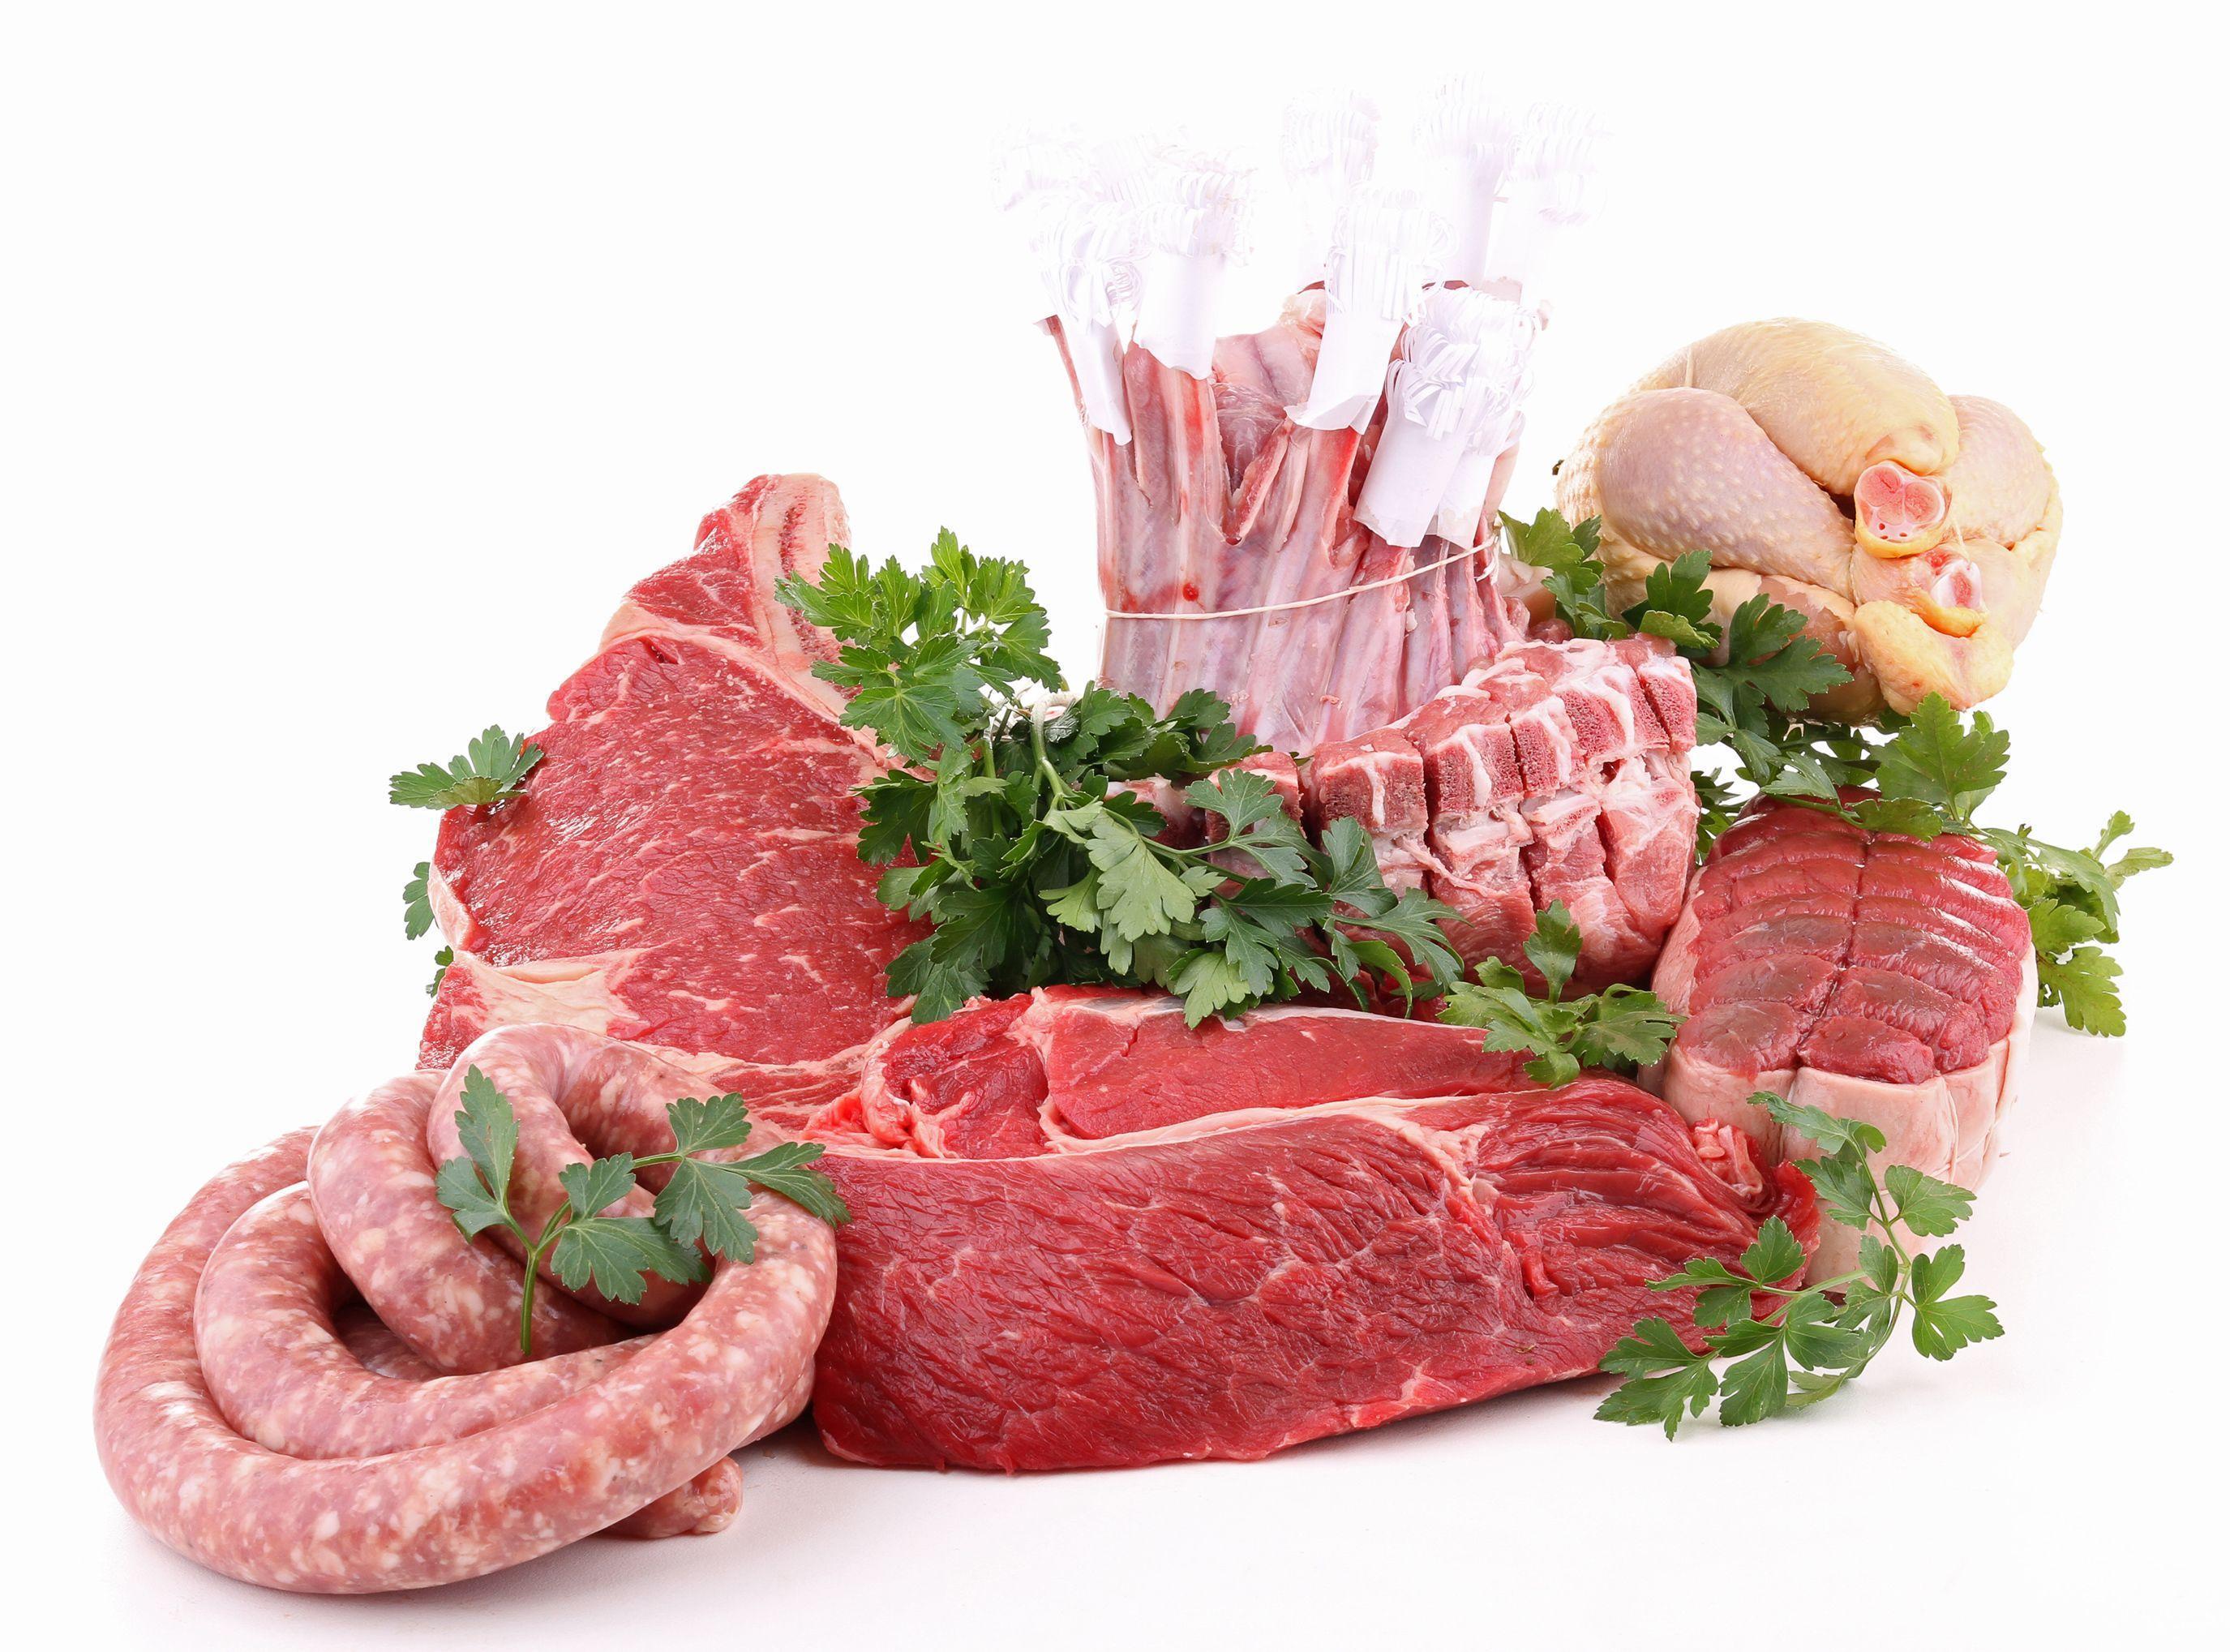 HD Widescreen Meat Wallpaper. Fine Meat Photo